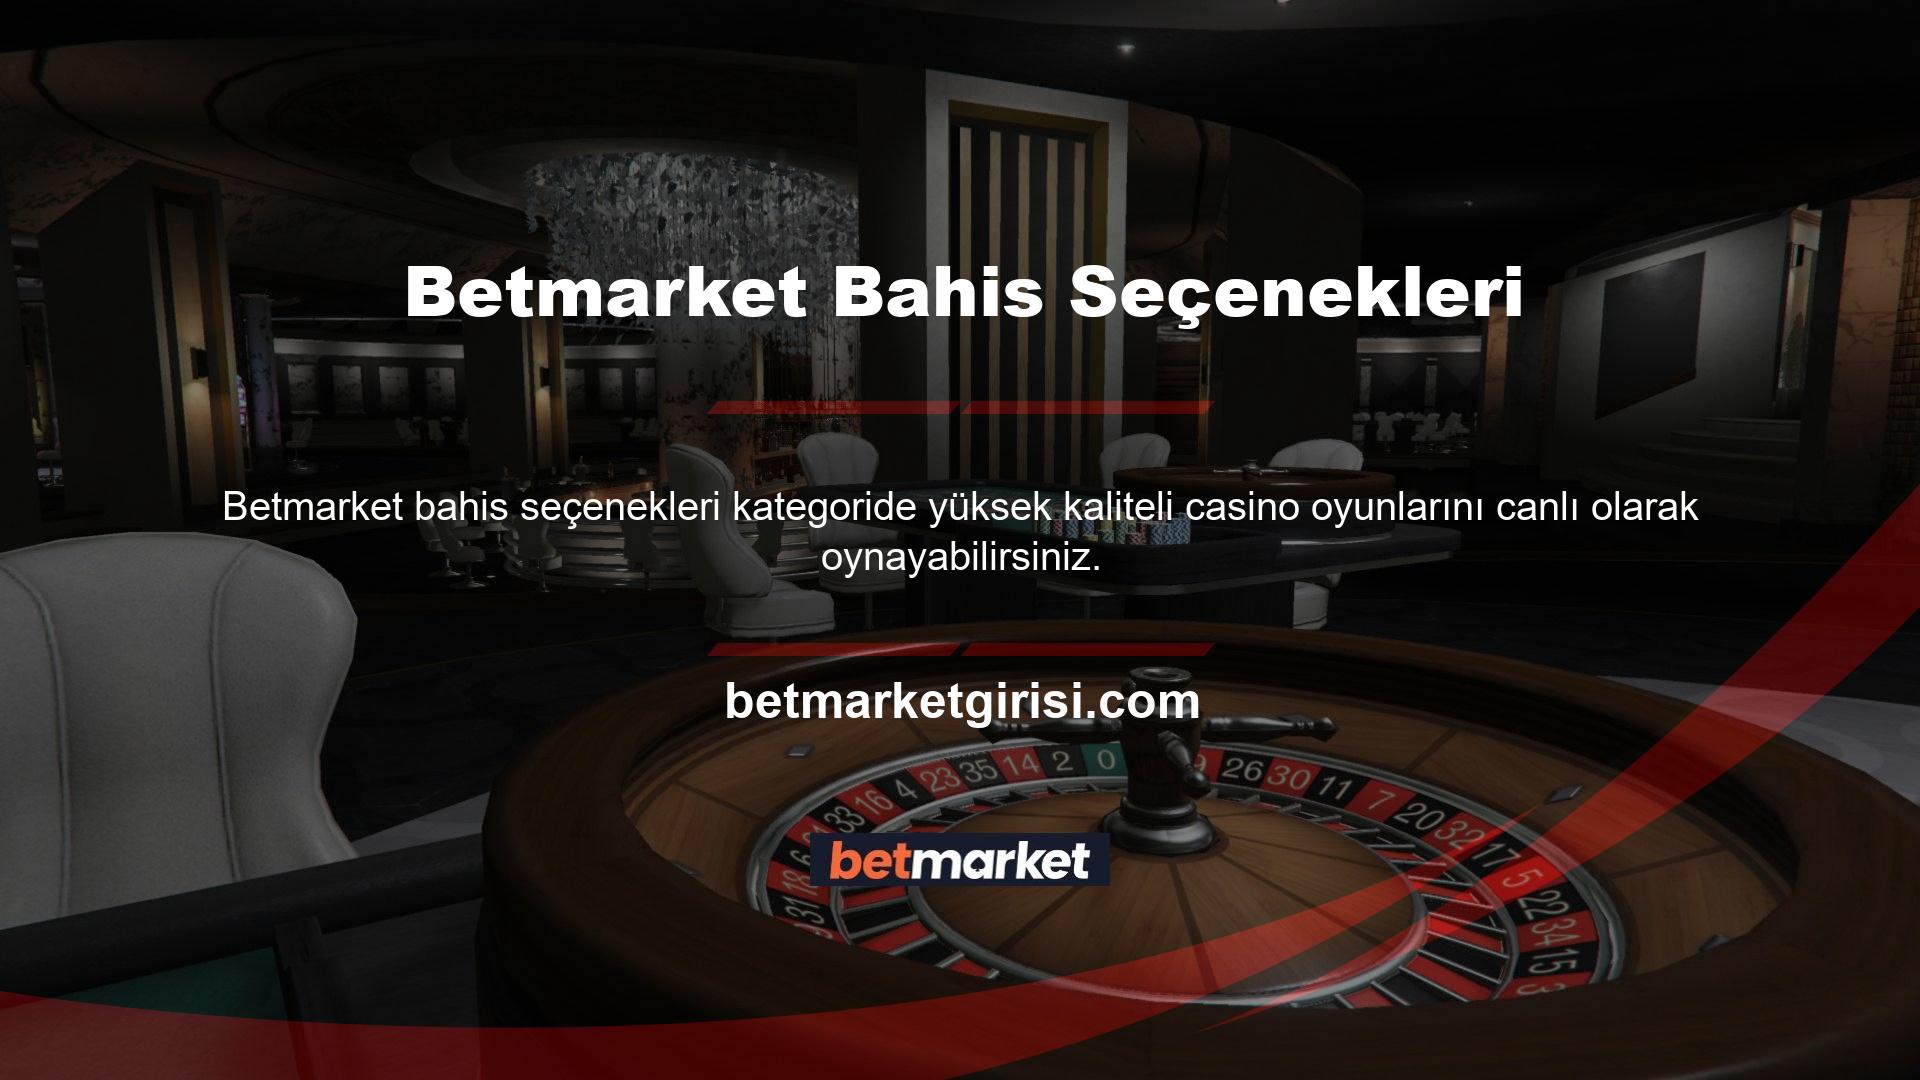 Betmarket Canlı Casino bölümünde kadın krupiyerlerle Rulet, Blackjack, Bakara, Texas Hold'em, Poker ve daha birçok oyunu oynayabilirsiniz